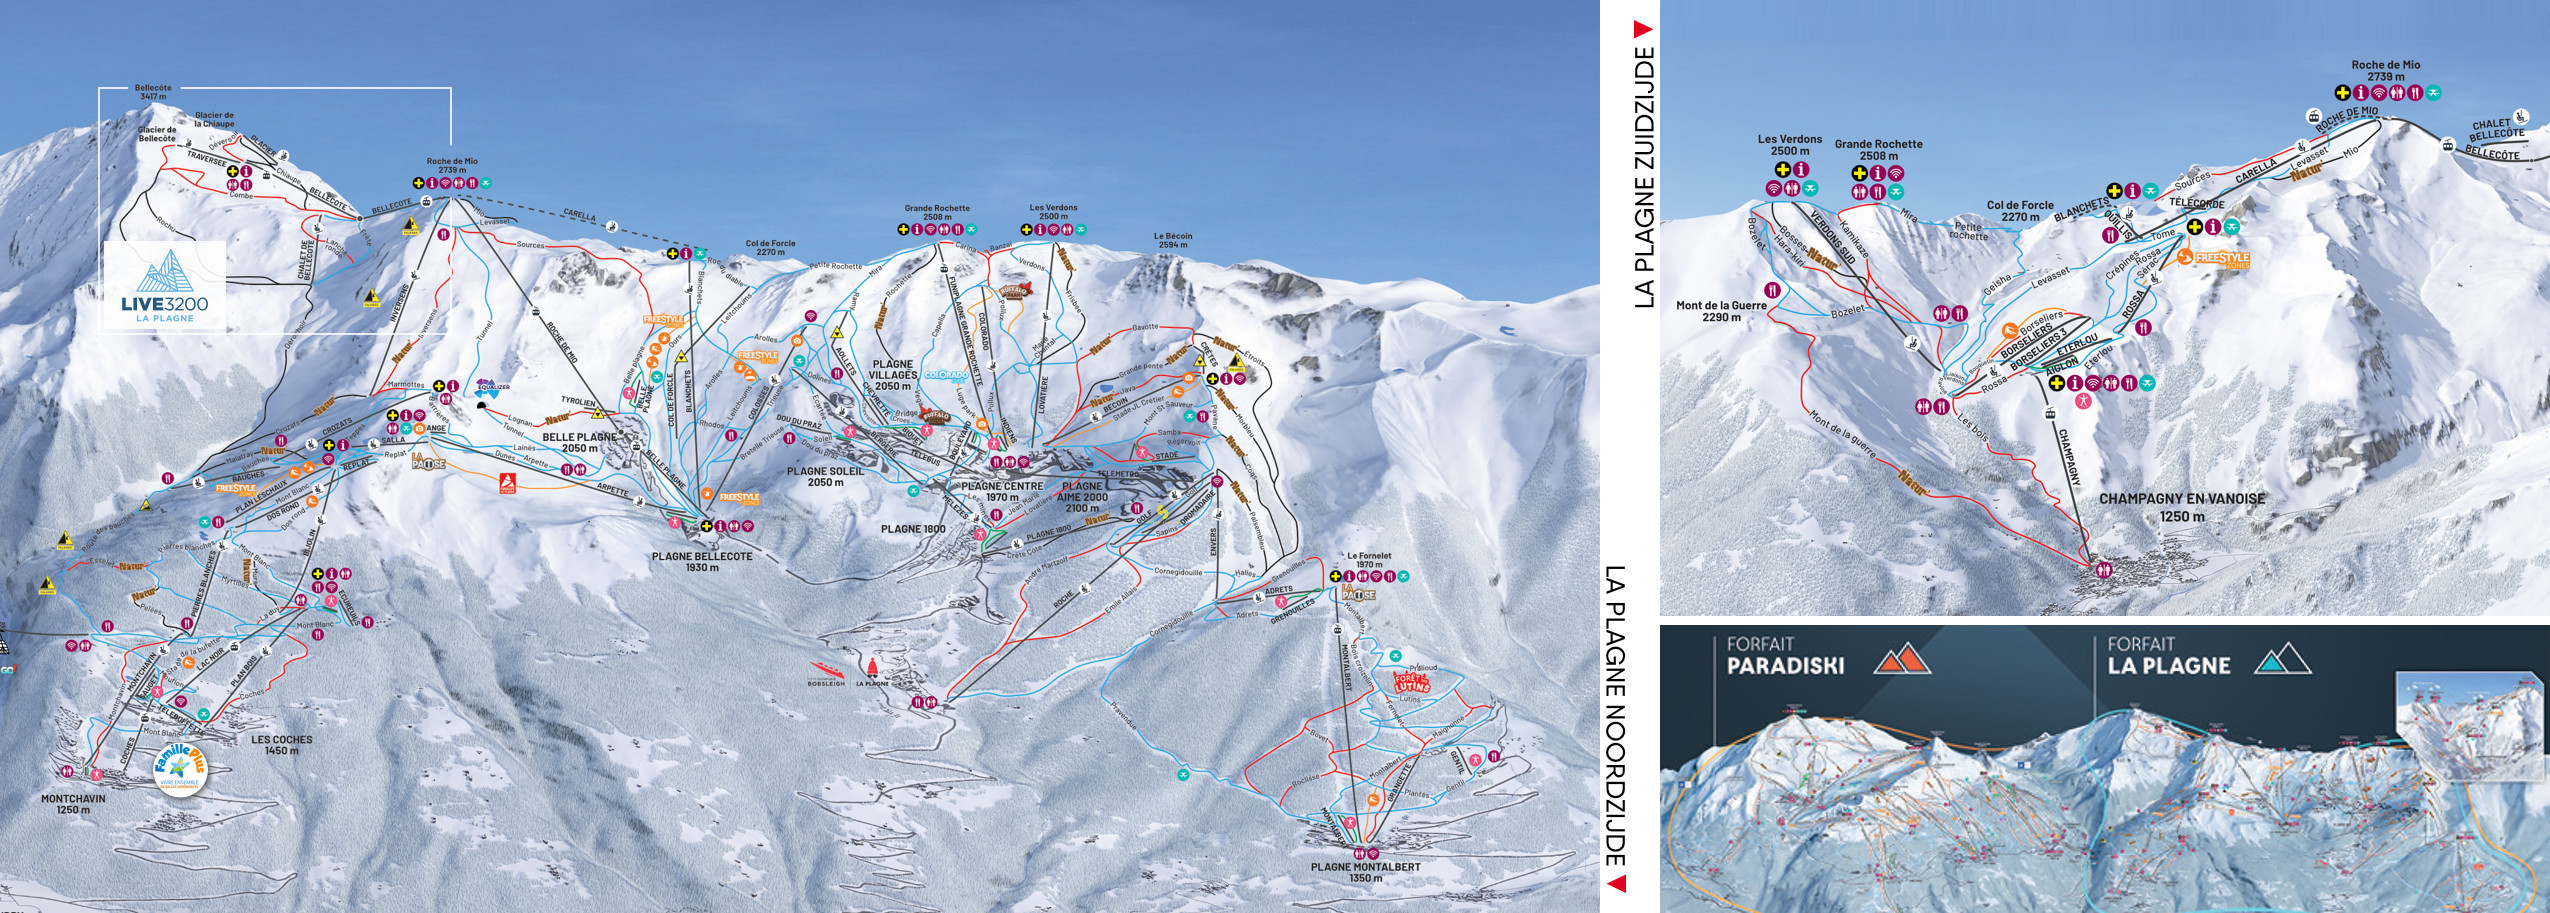 La Plagne webcams, skigebied in Frankrijk